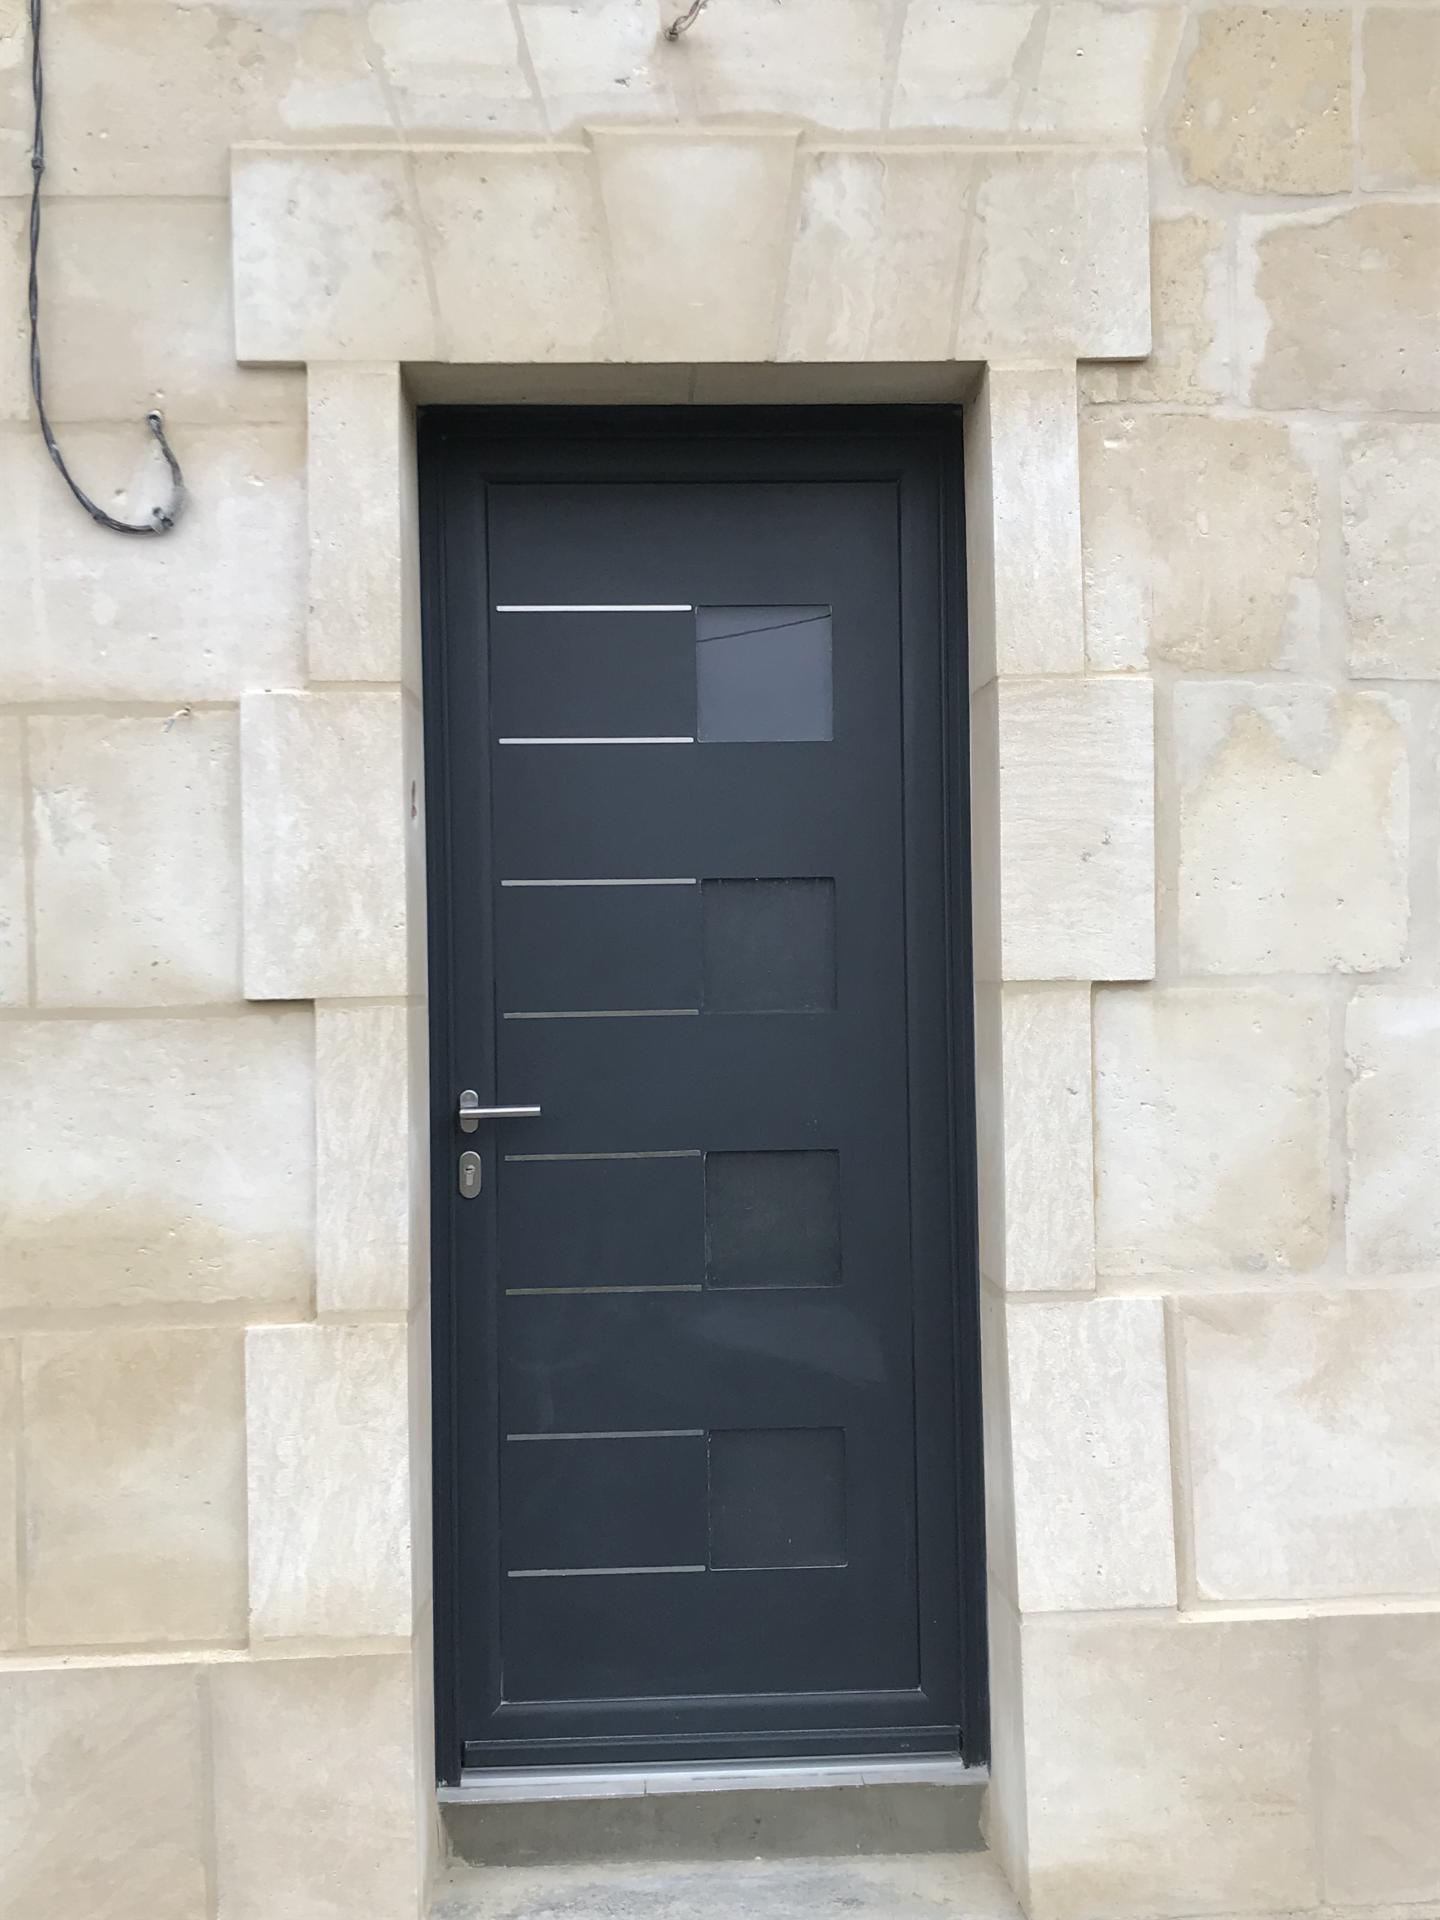 Encadrement de porte en pierre